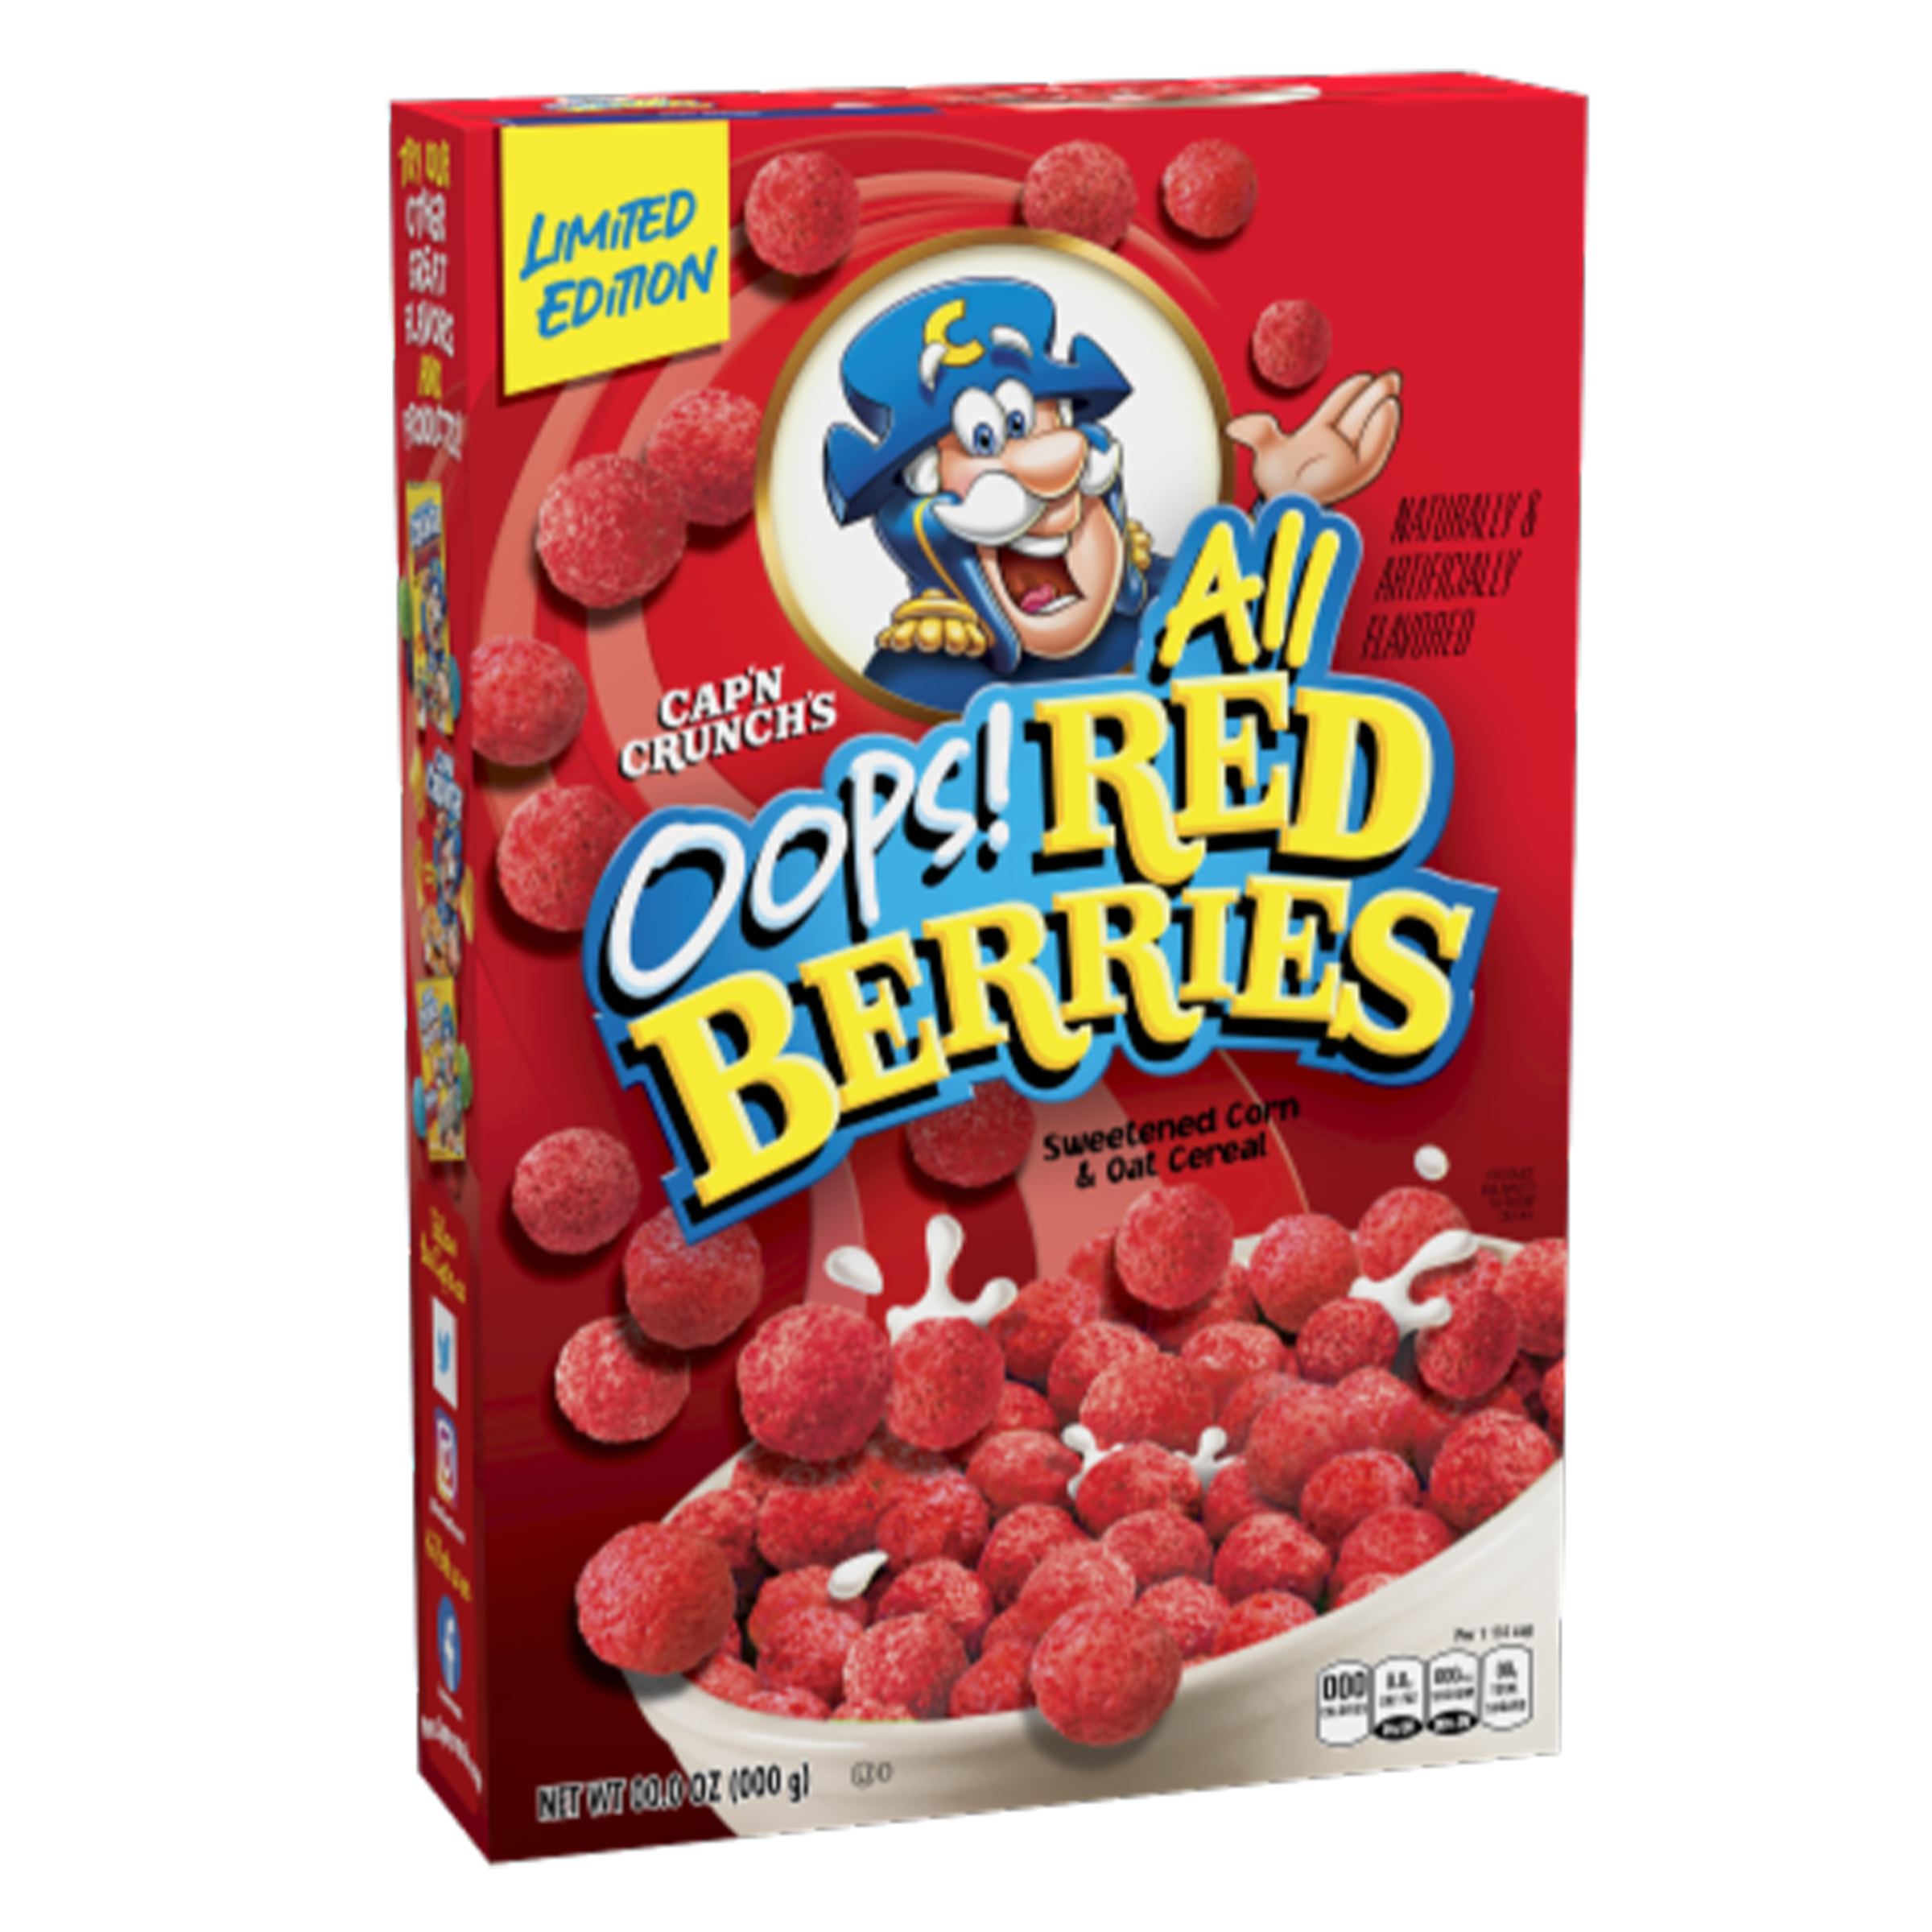 Cap'n Crunch's - Oops All Red Berries